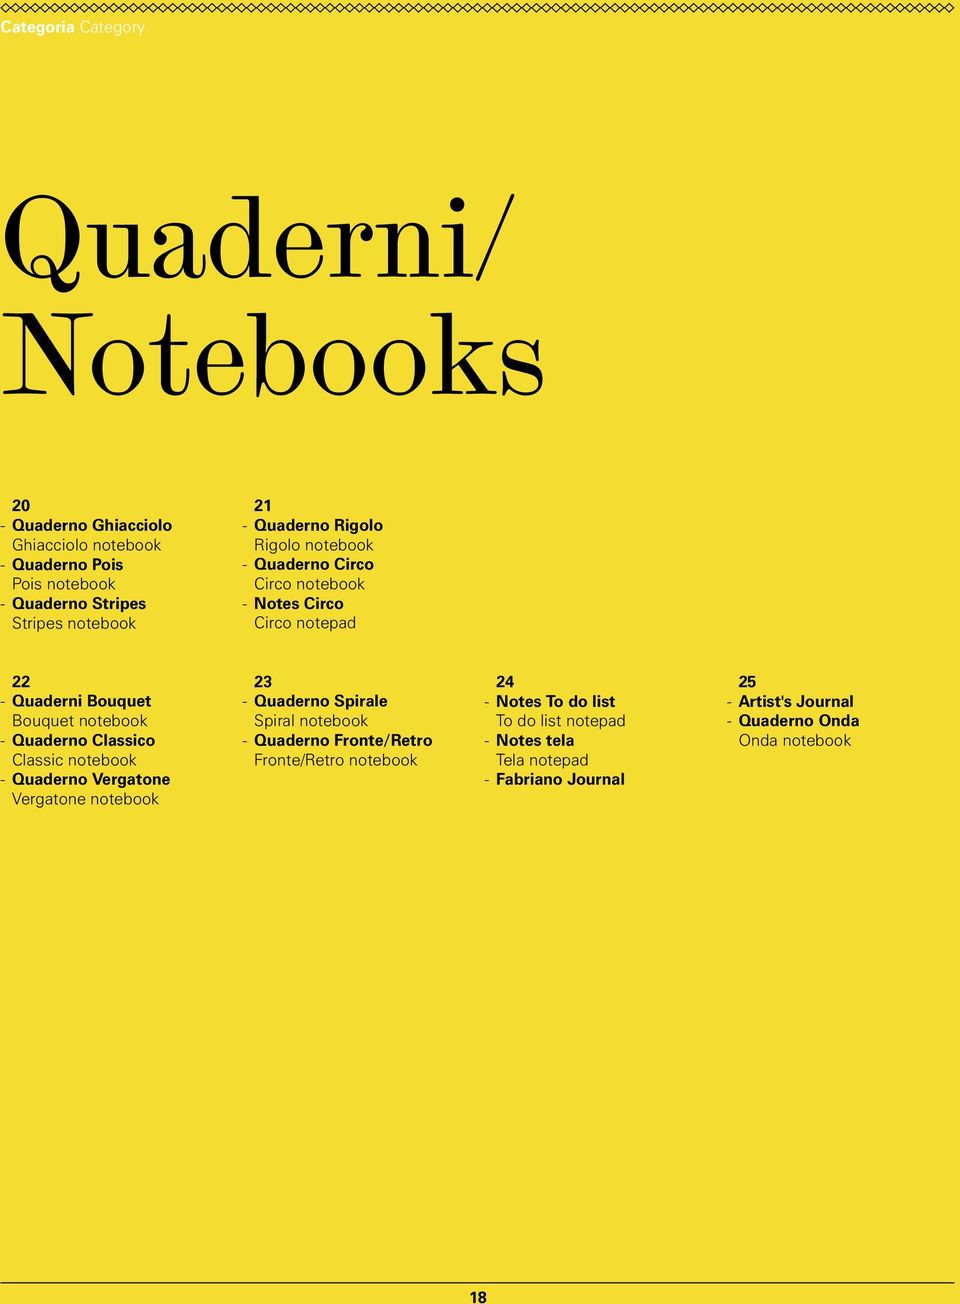 Quaderno Classico Classic notebook Quaderno Vergatone Vergatone notebook 23 Quaderno Spirale Spiral notebook Quaderno Fronte/Retro